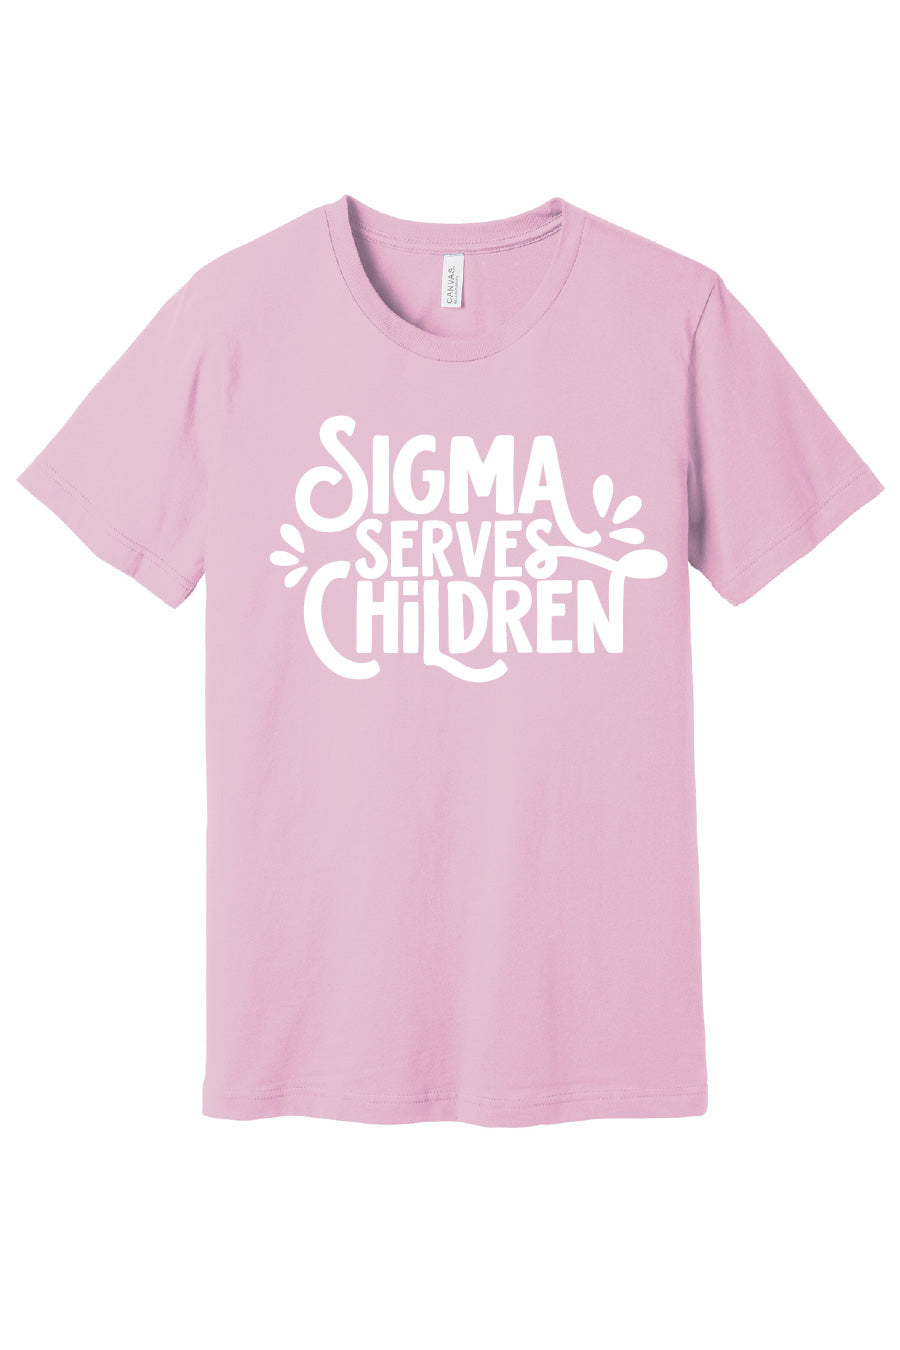 Sigma Serves Children Tee